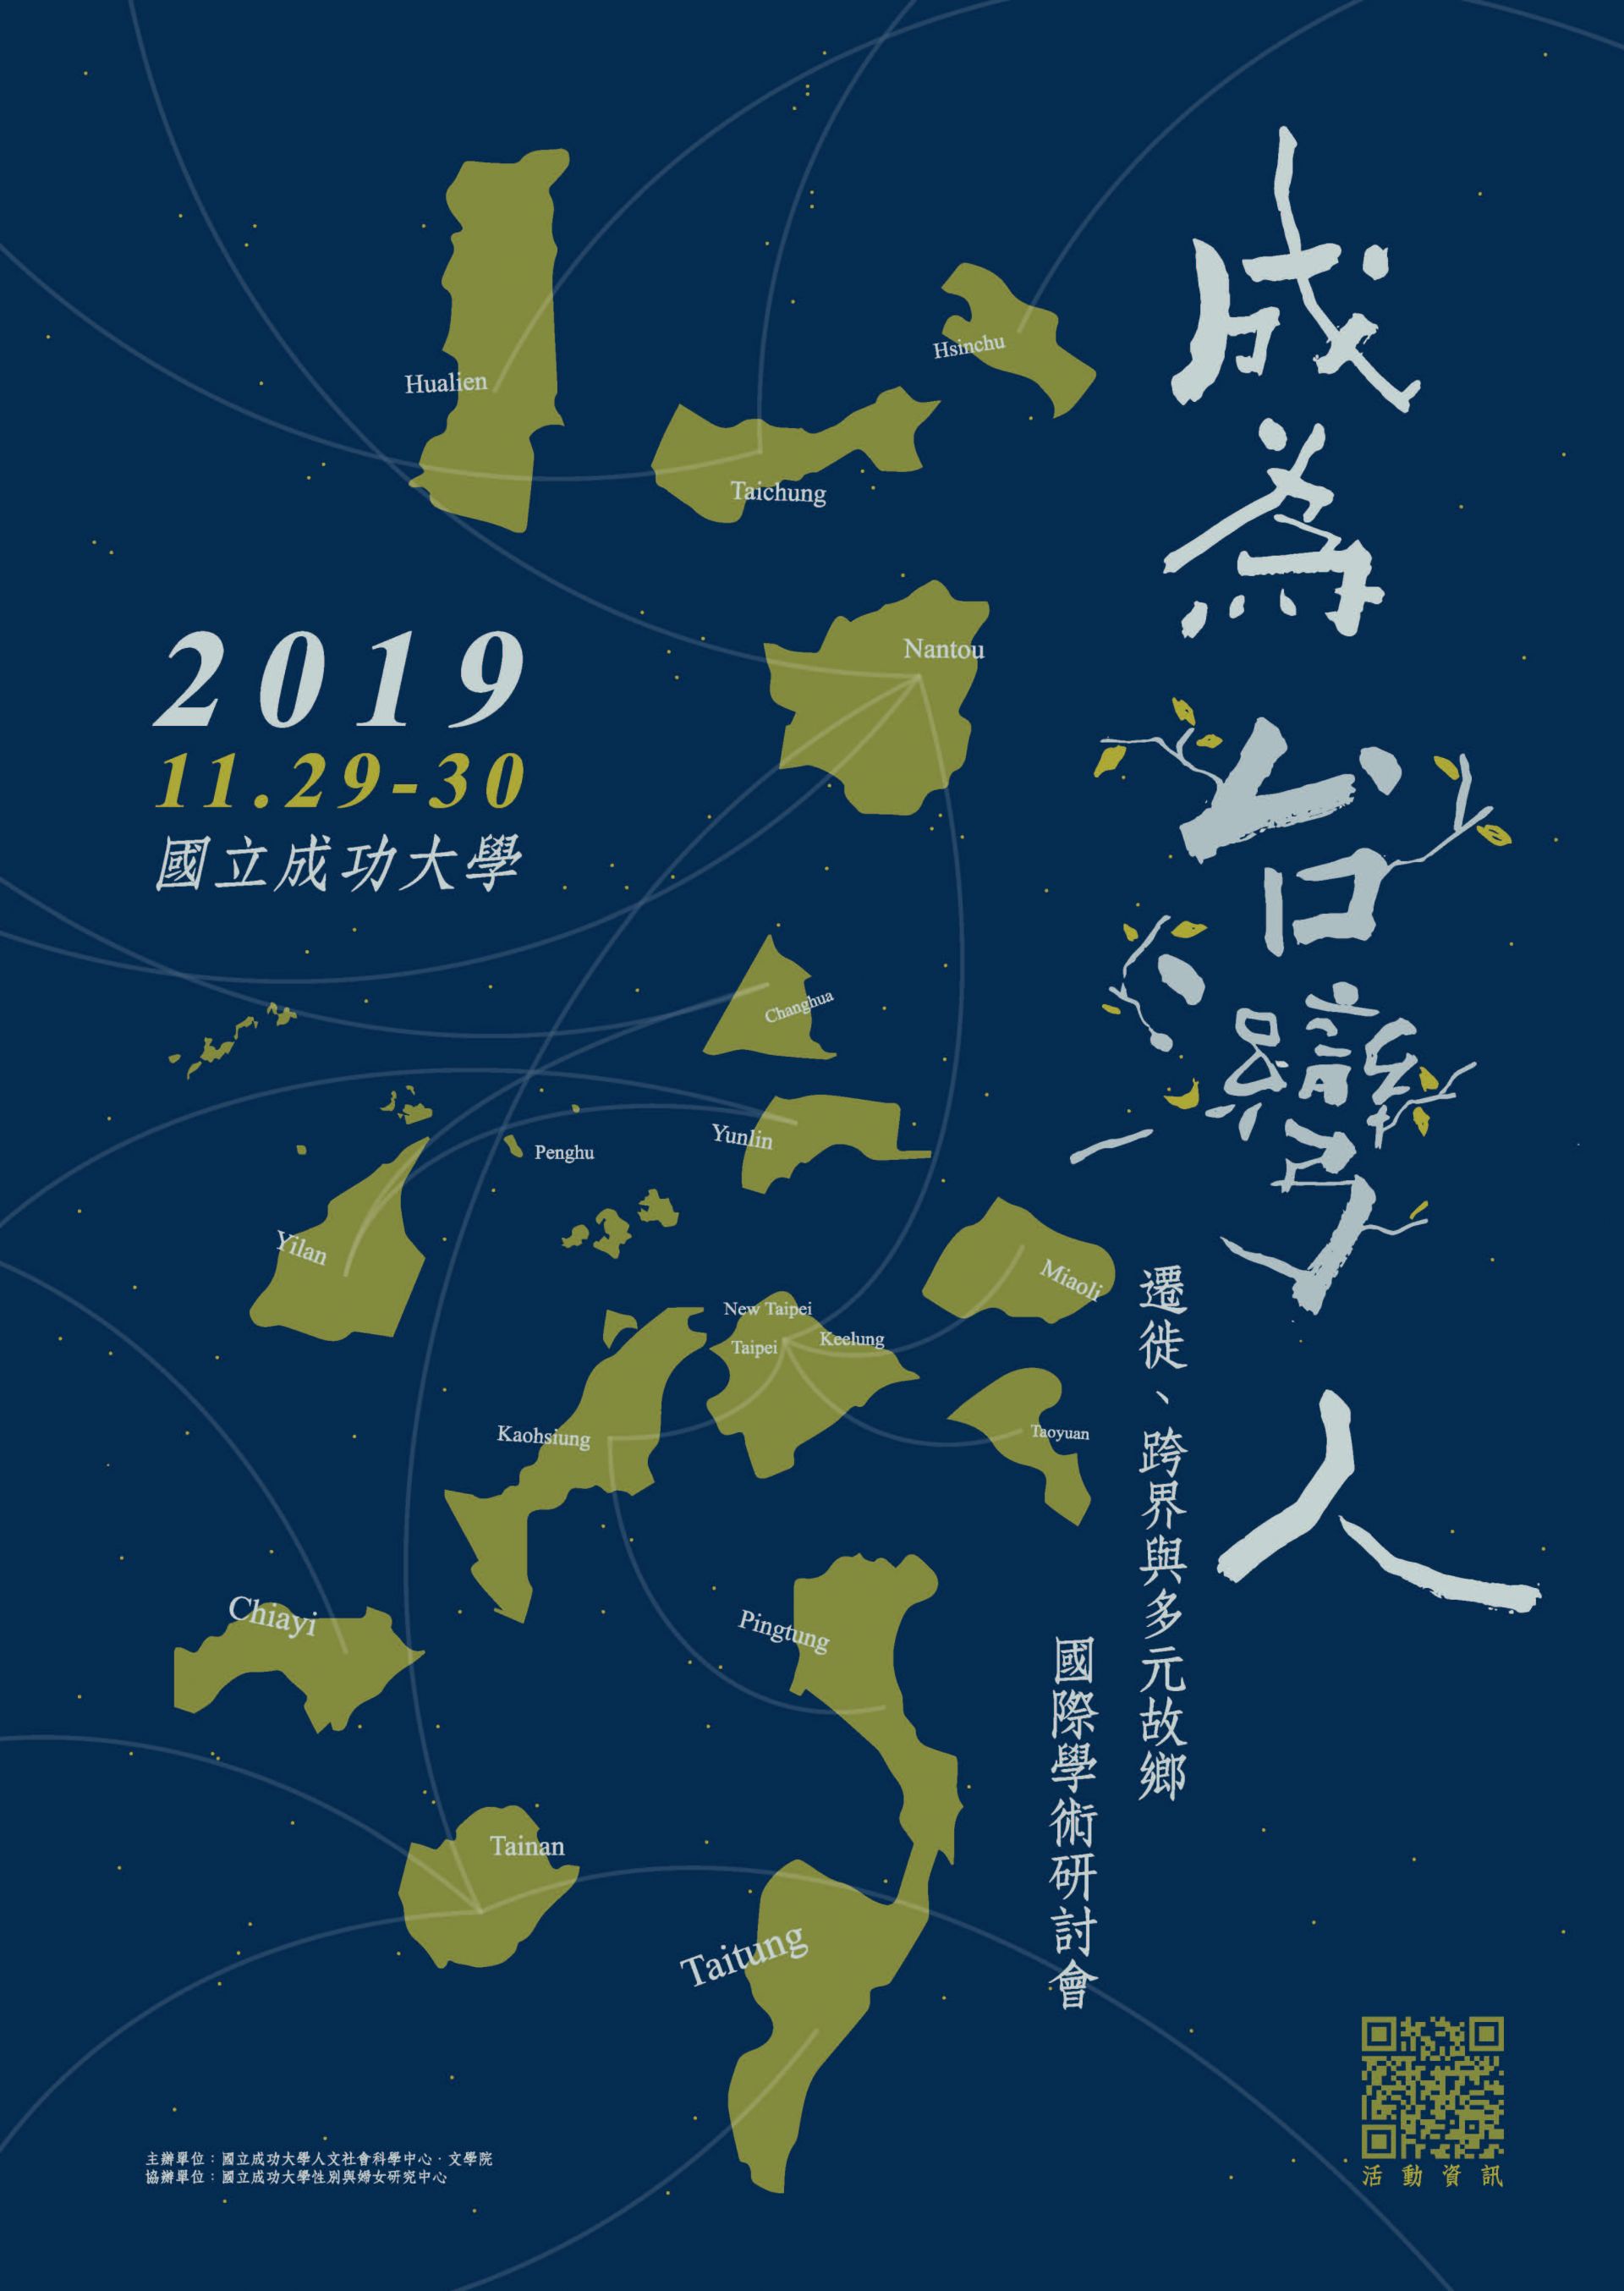 成為臺灣人 : 遷徙、跨界與多元故鄉 國際學術研討會